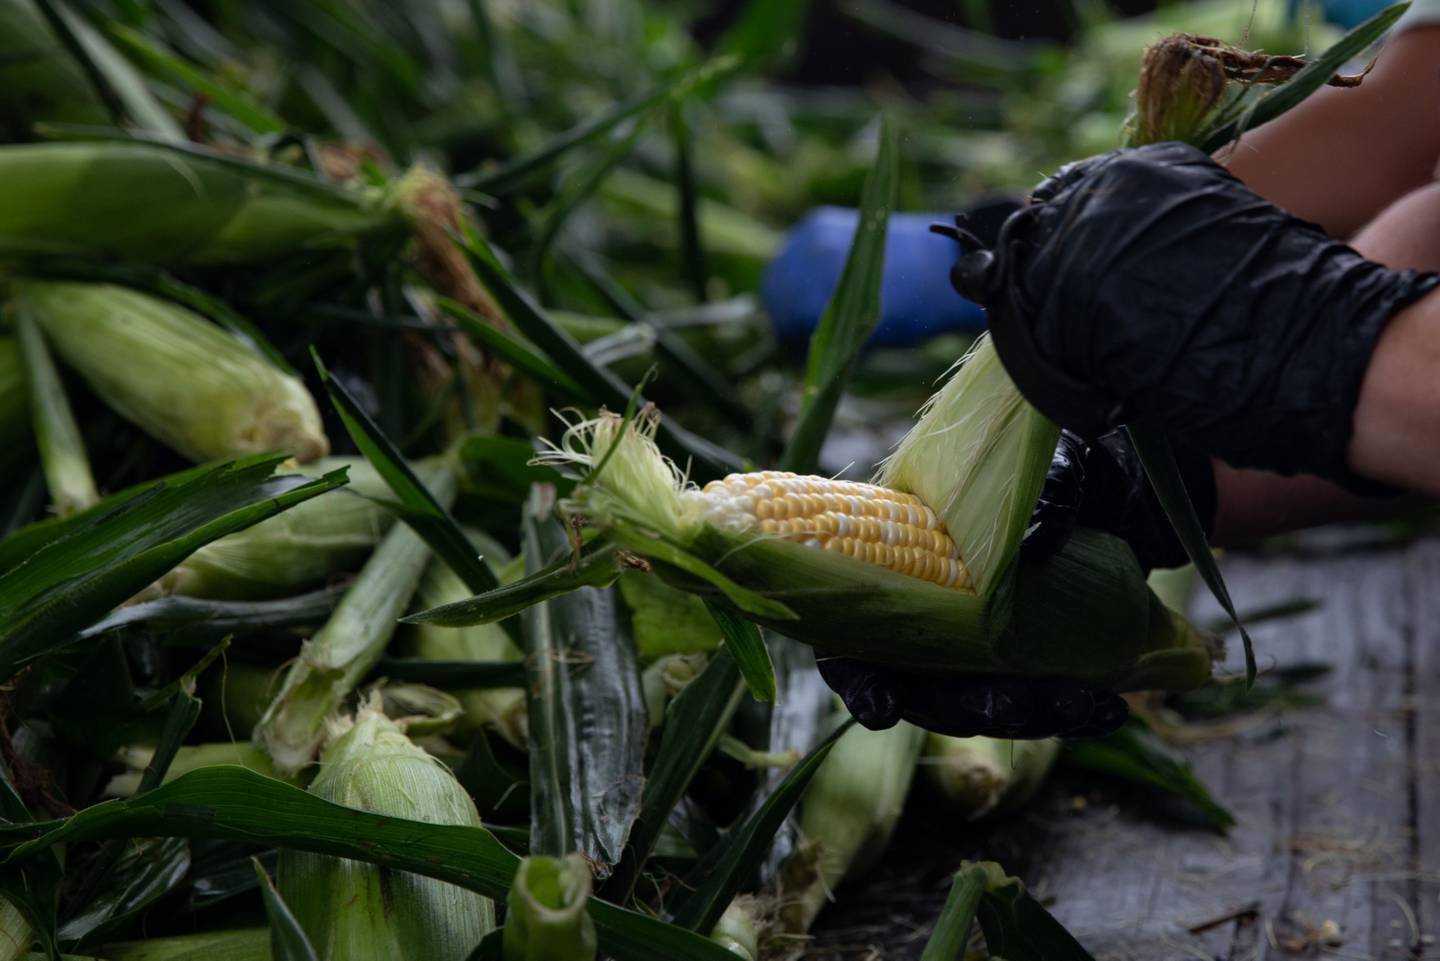 Un trabajador en una granja en Lansing, Michigan, EE.UU., el jueves 12 de agosto de 2021. Los precios del maíz subieron después de que un informe de EE.UU. recortara las estimaciones de los rendimientos, haciendo caer las perspectivas de producción de esta temporada.